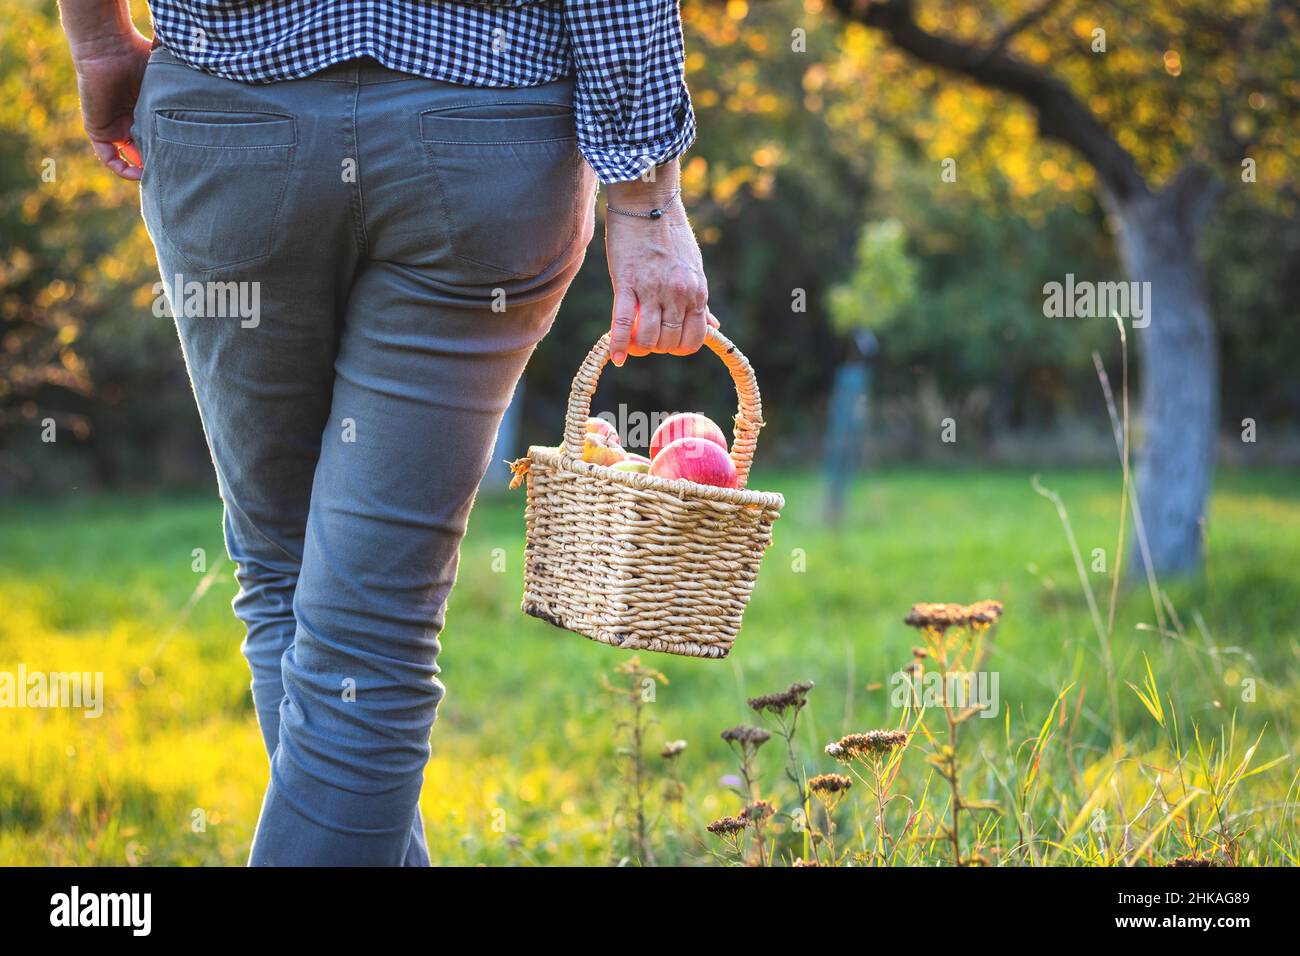 Die Frau hält einen kleinen Korbkorb voll geernteter Äpfel. Herbstsaison im Obstgarten. Selbst angebaute Äpfel. Stockfoto